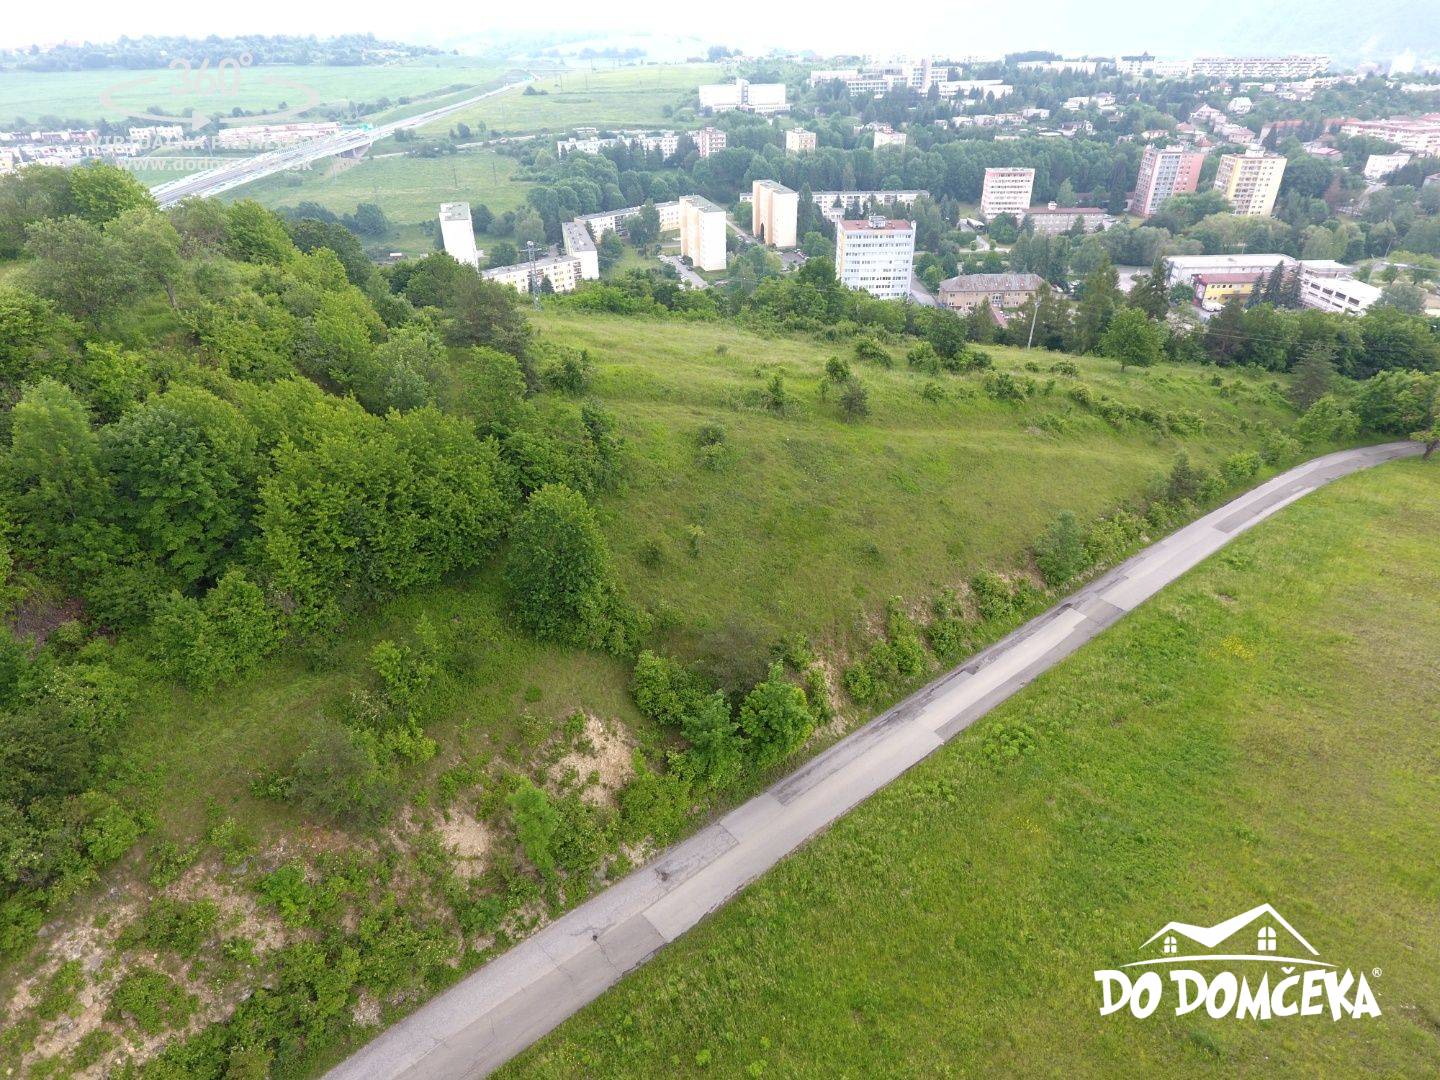 PREDANÉ - Pozemok s pekným výhľadom na mesto Banská Bystrica, lokalita Slnečné stráne